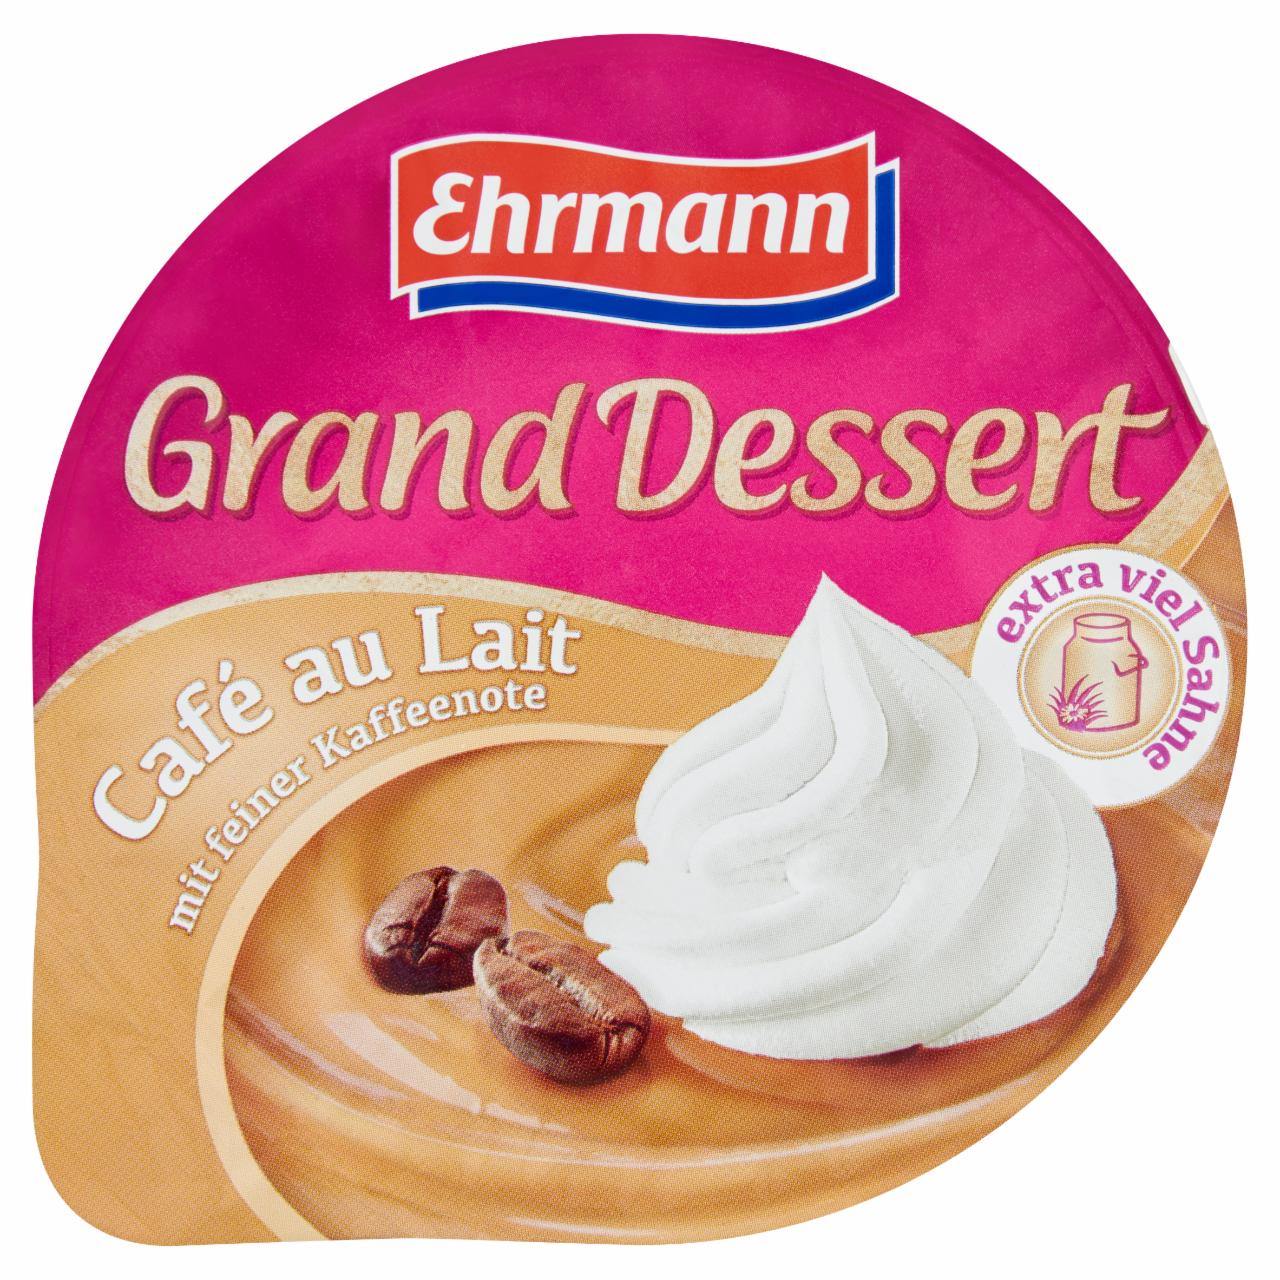 Képek - Ehrmann Grand Dessert kávé ízű puding tejszínhabbal 190 g